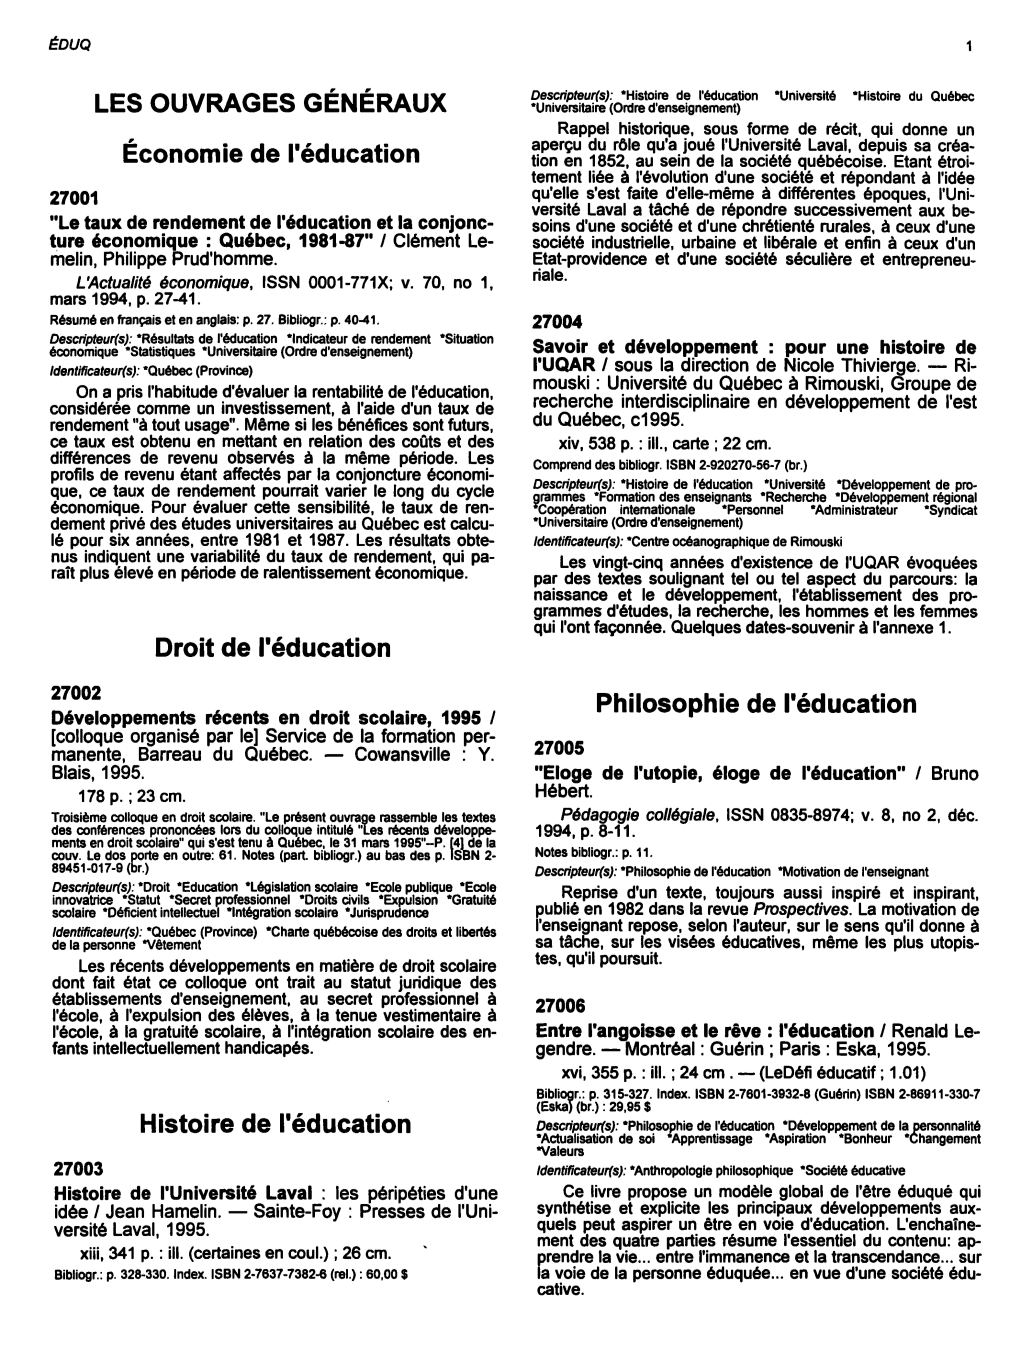 Philosophie De L'éducation Développements Récents En Droit Scolaire, 1995 / [Colloque Organisé Par Le] Service De La Formation Per­ 27005 Manente, Barreau Du Québec